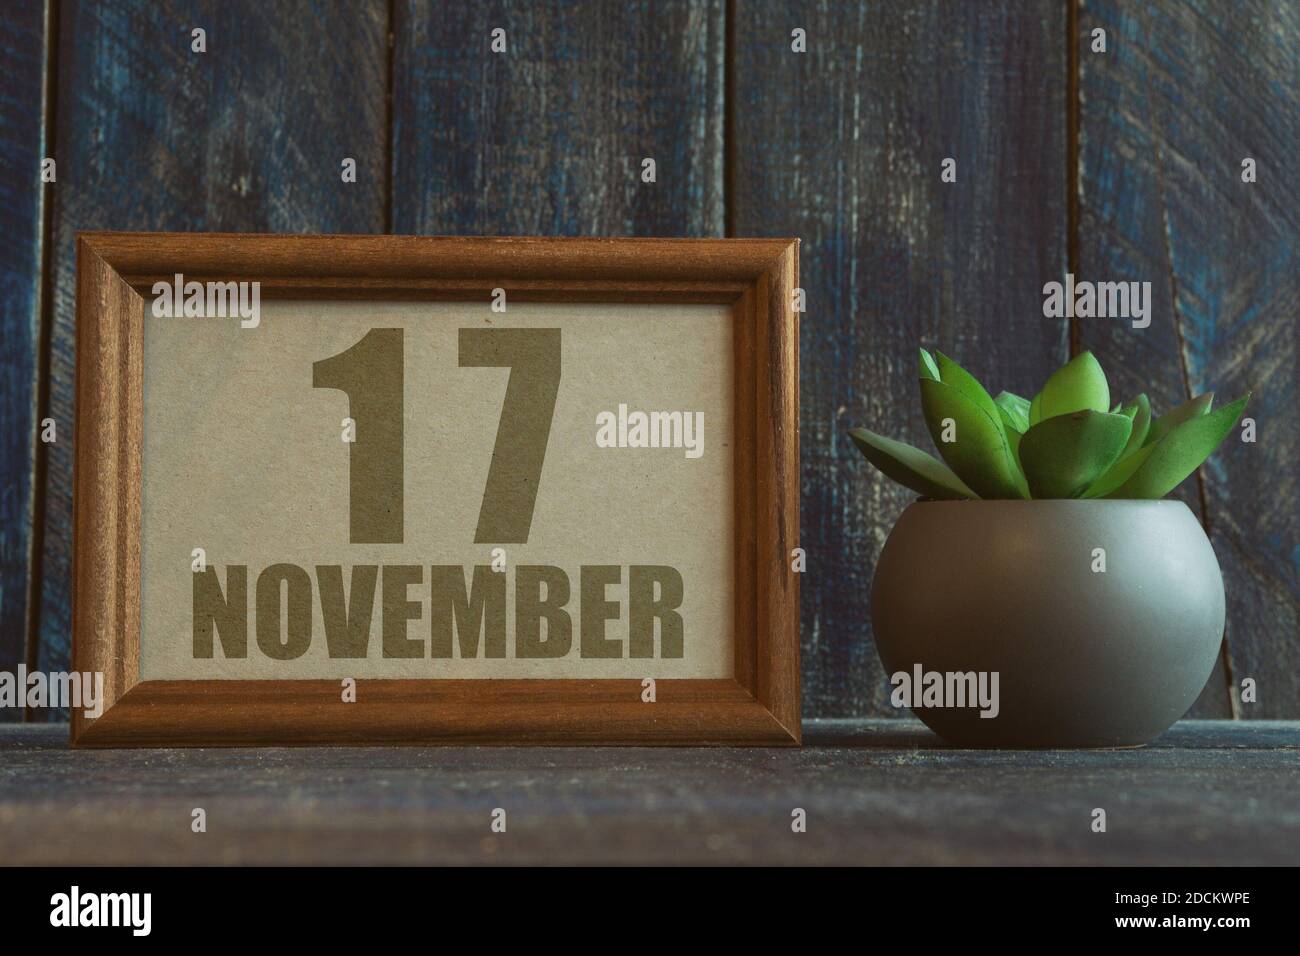 17 novembre. Jour 17 du mois, date dans le cadre à côté de succulent sur fond de bois automne mois, jour de l'année concept Banque D'Images